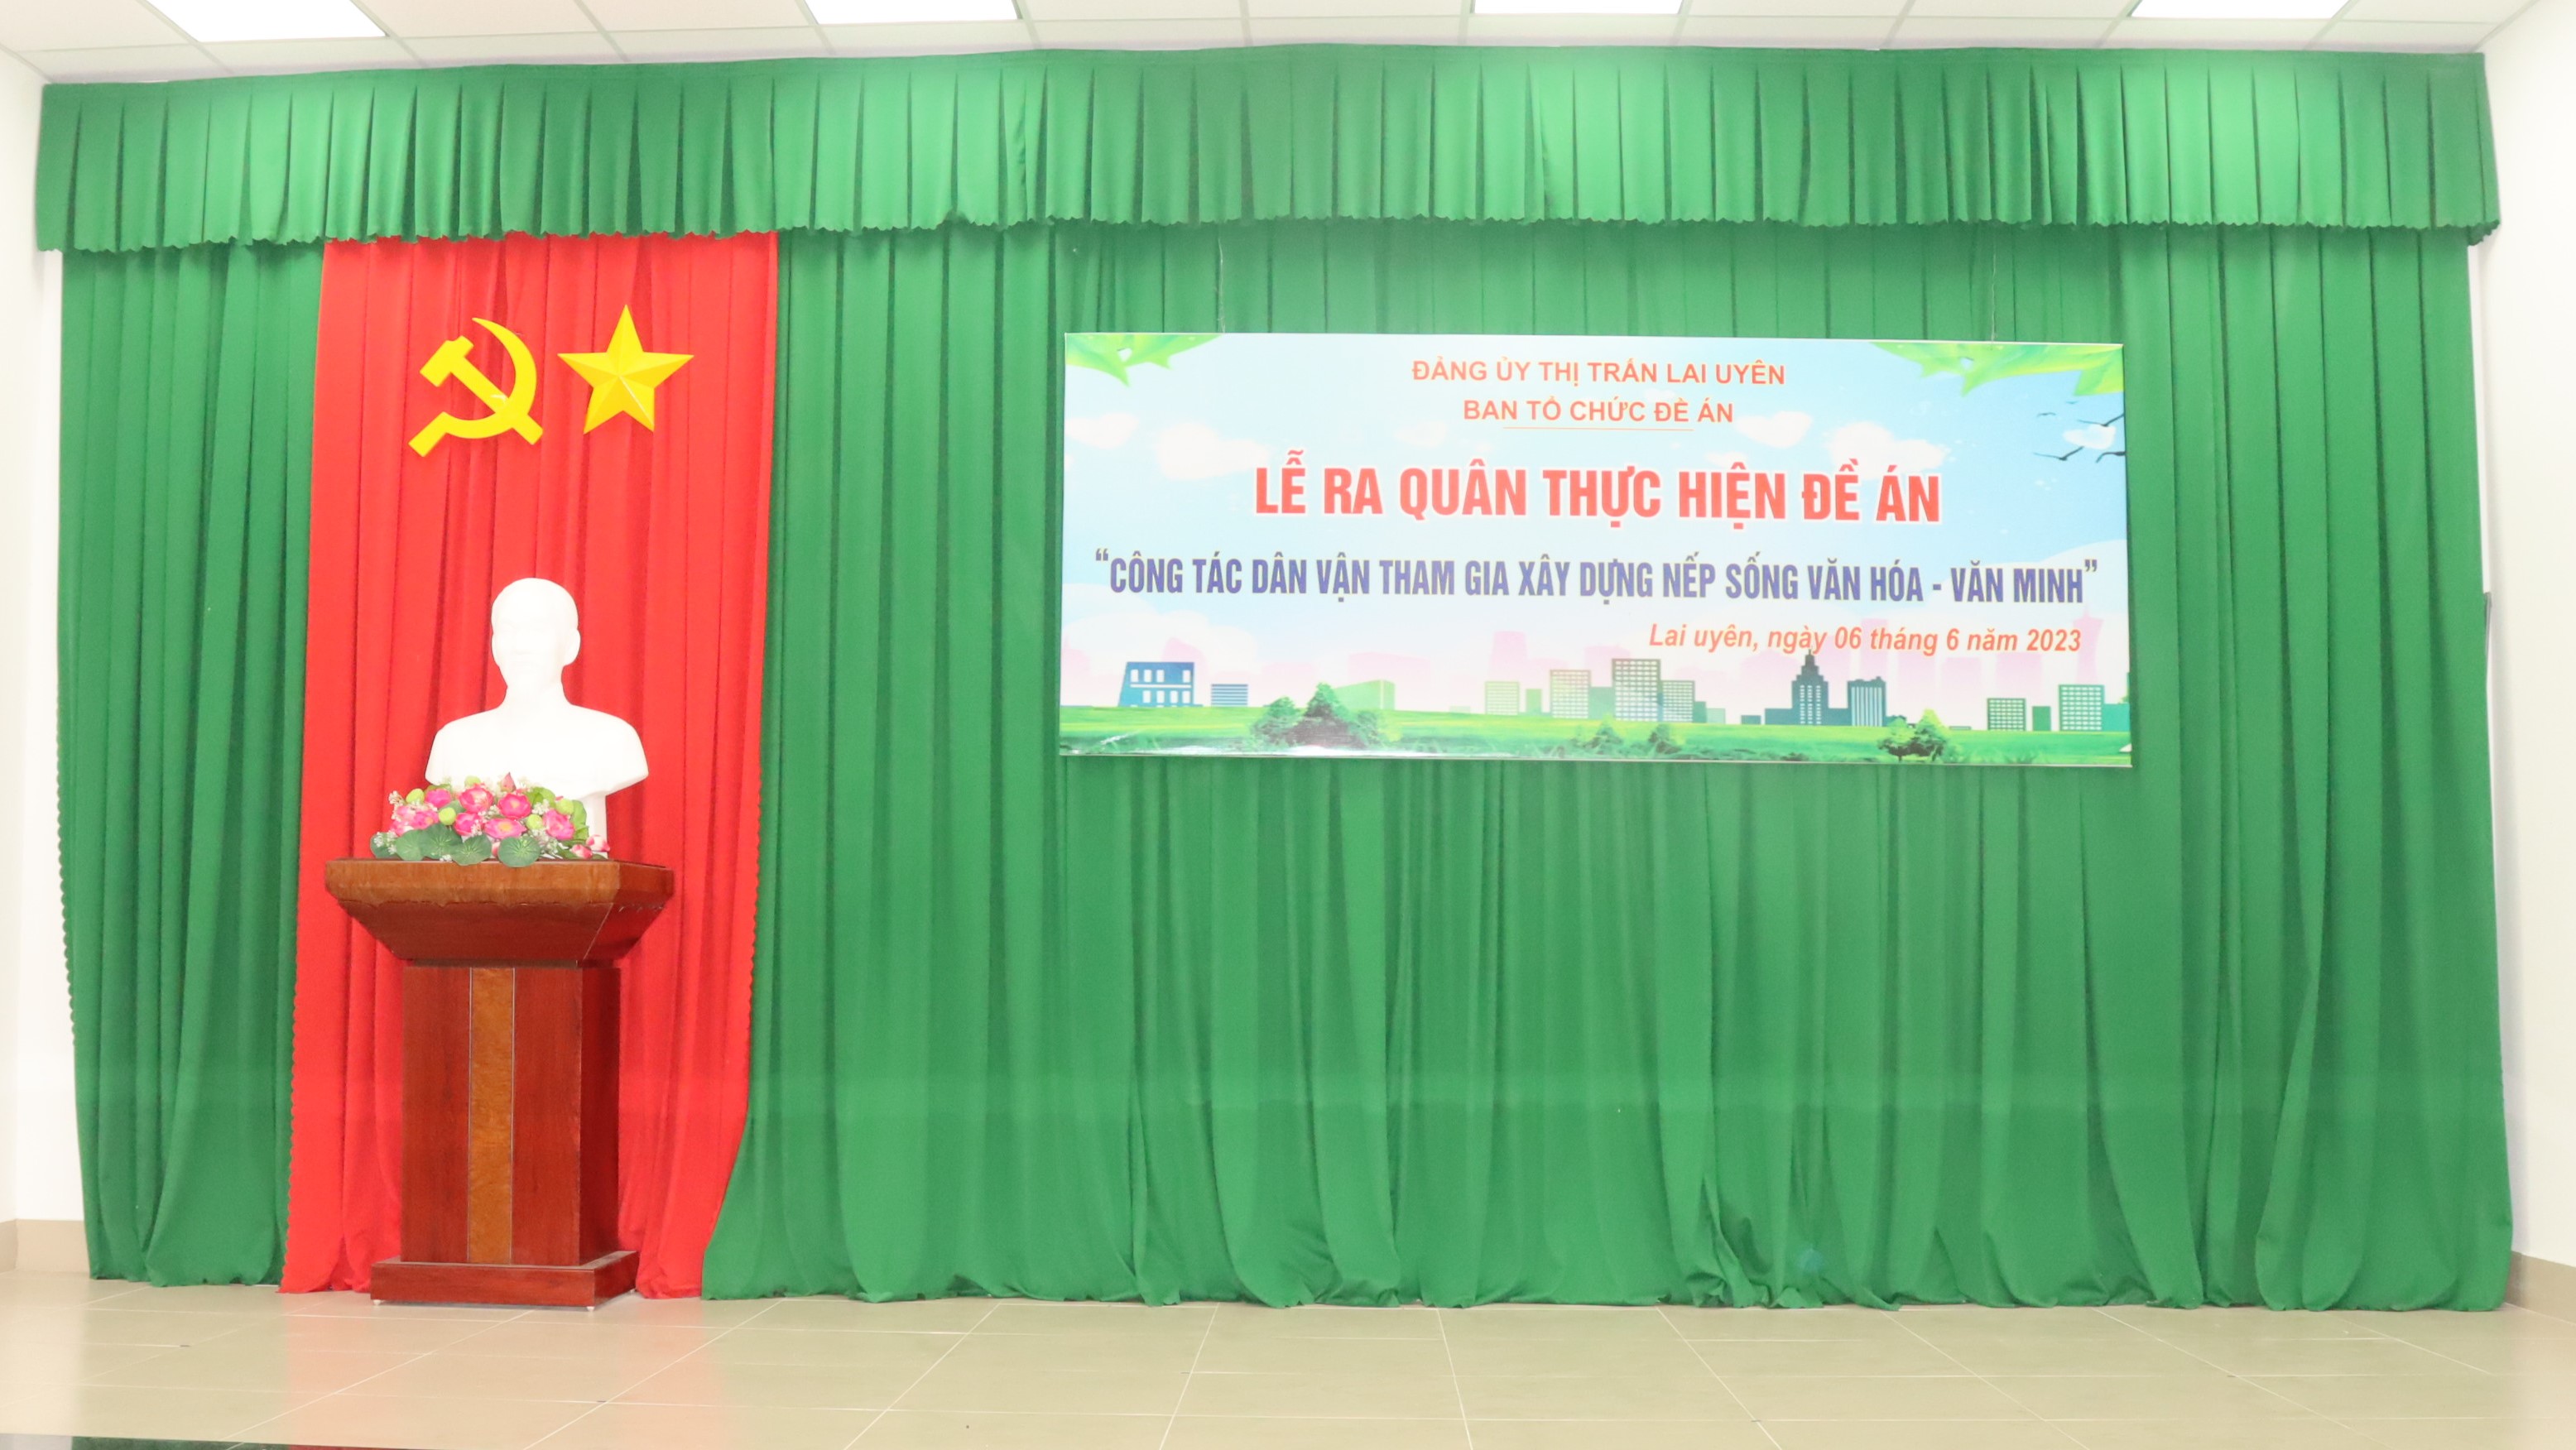 Thị trấn Lai Uyên tổ chức Lễ ra quân thực hiện Đề án “công tác dân vận tham gia xây dựng nếp sống văn hóa-văn minh”